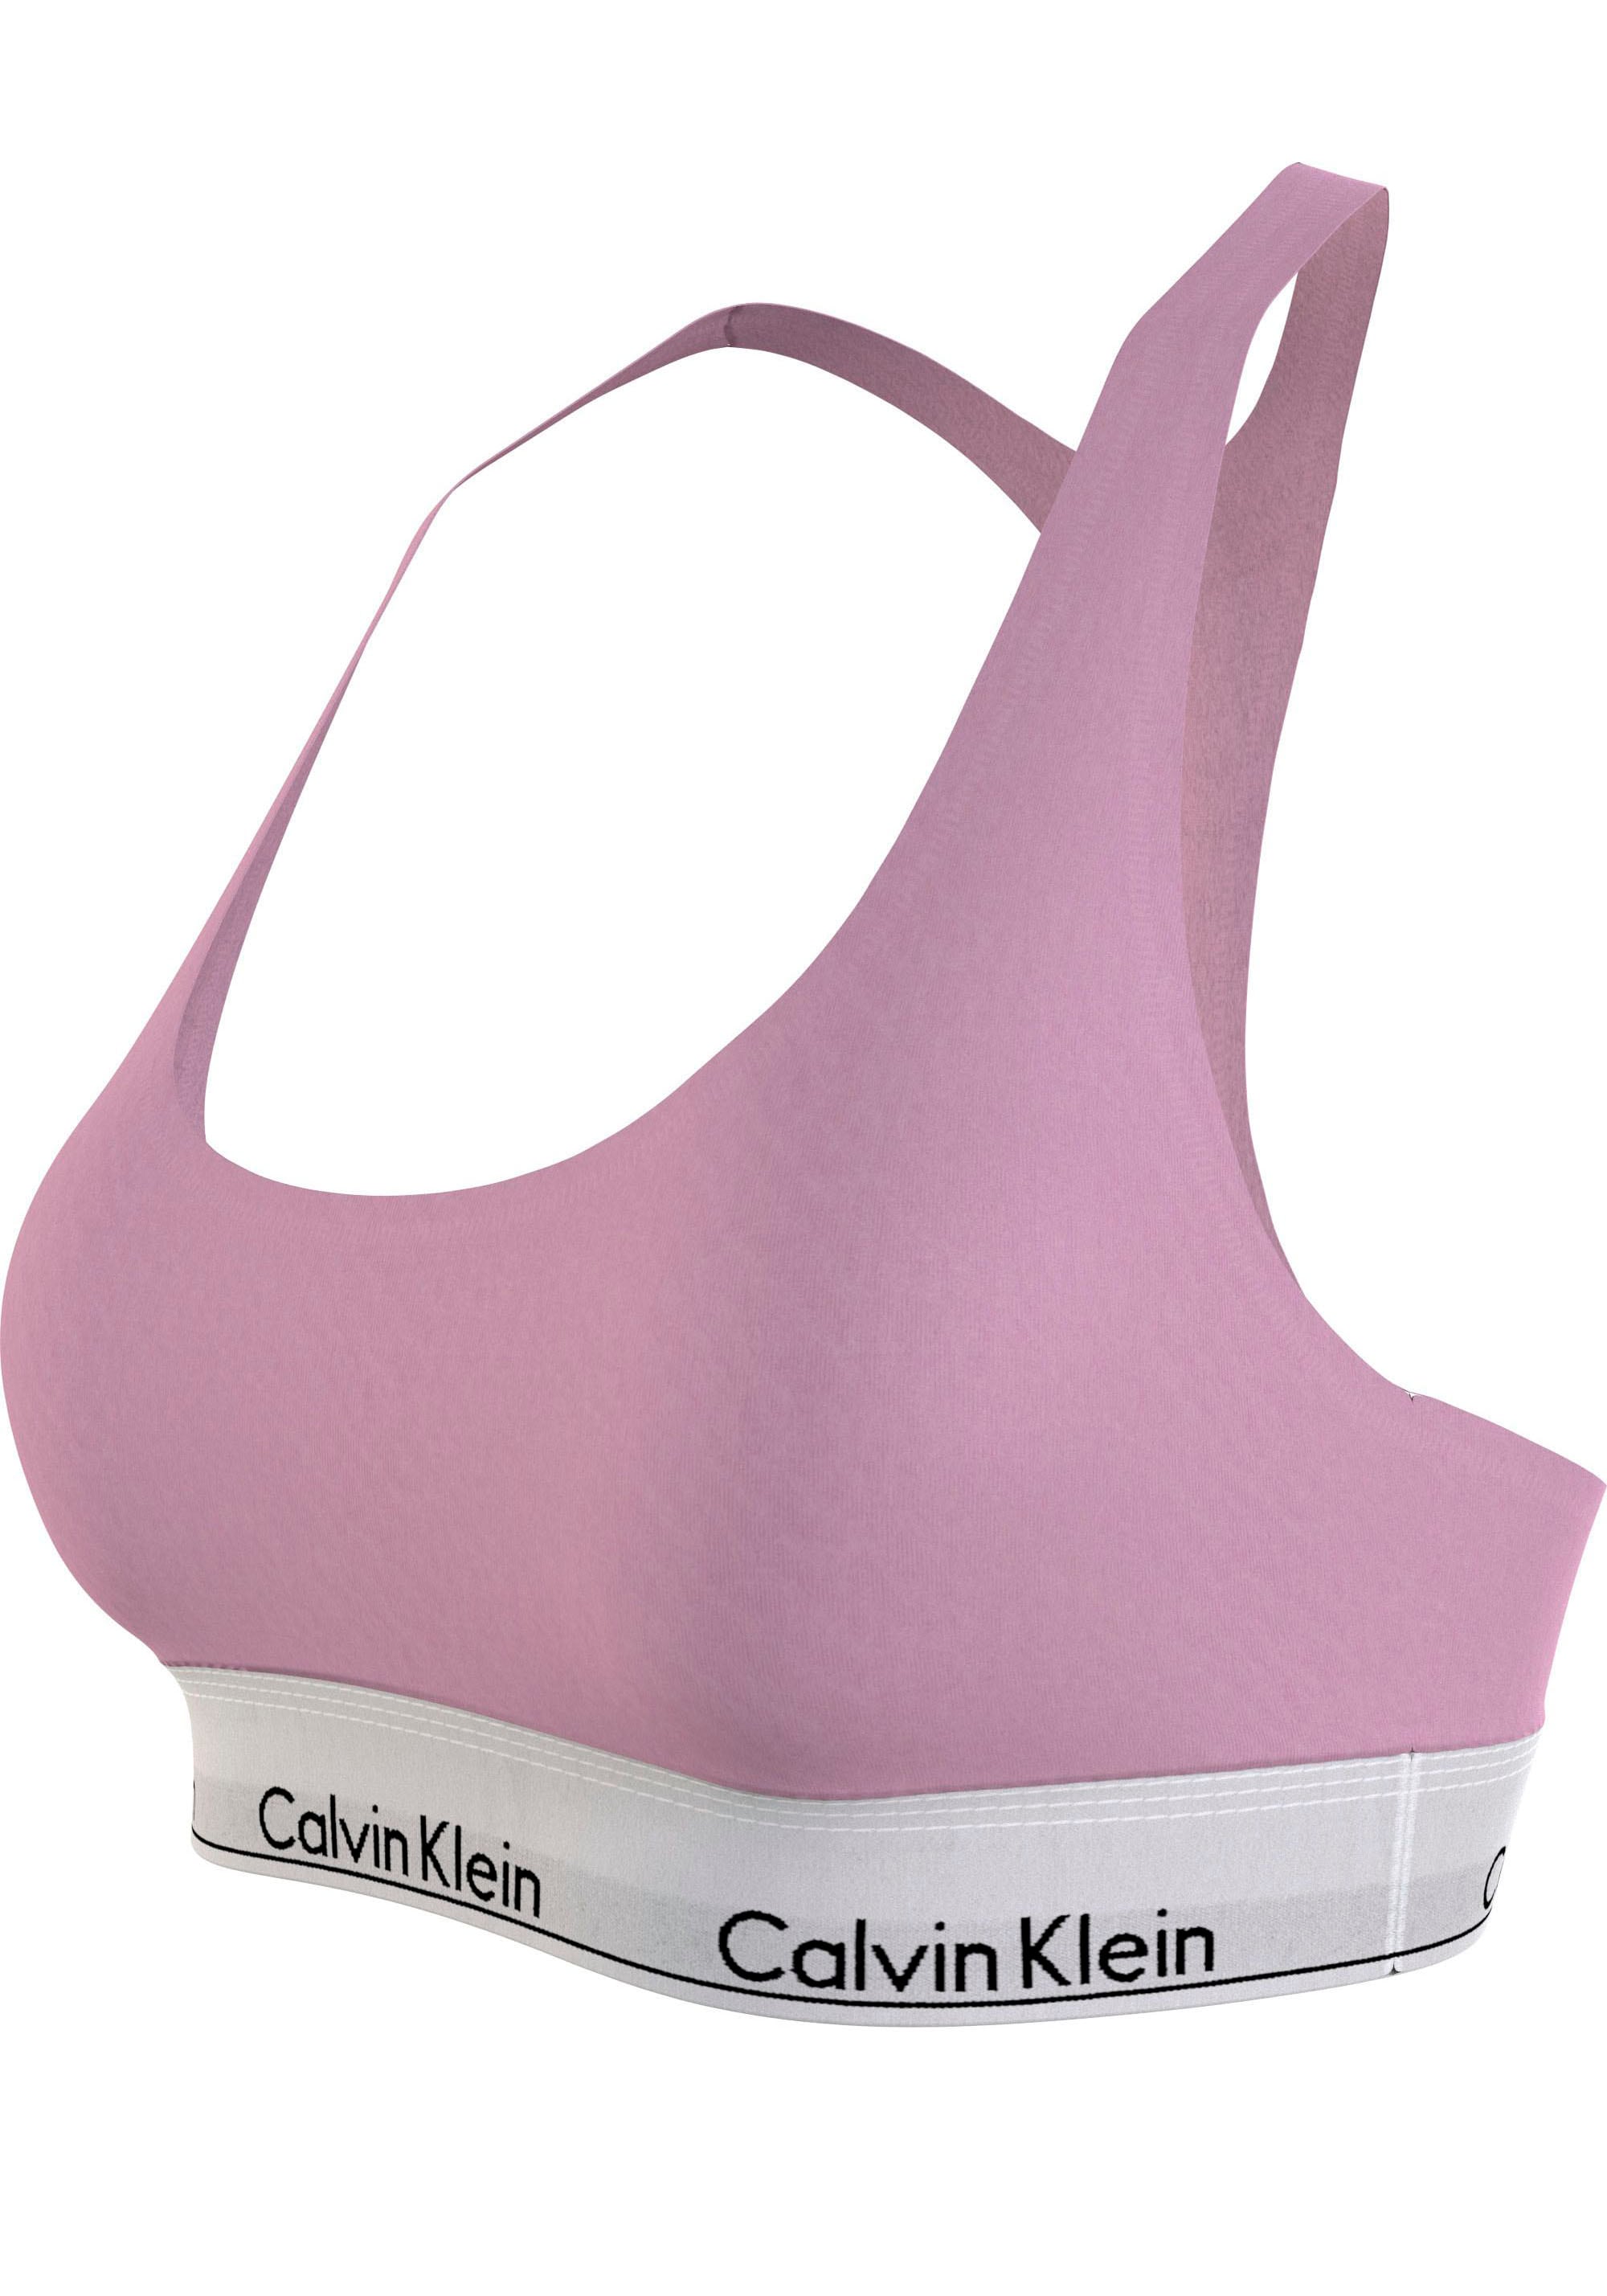 Calvin Klein Underwear Bralette-BH, mit klassischem CK-Logo